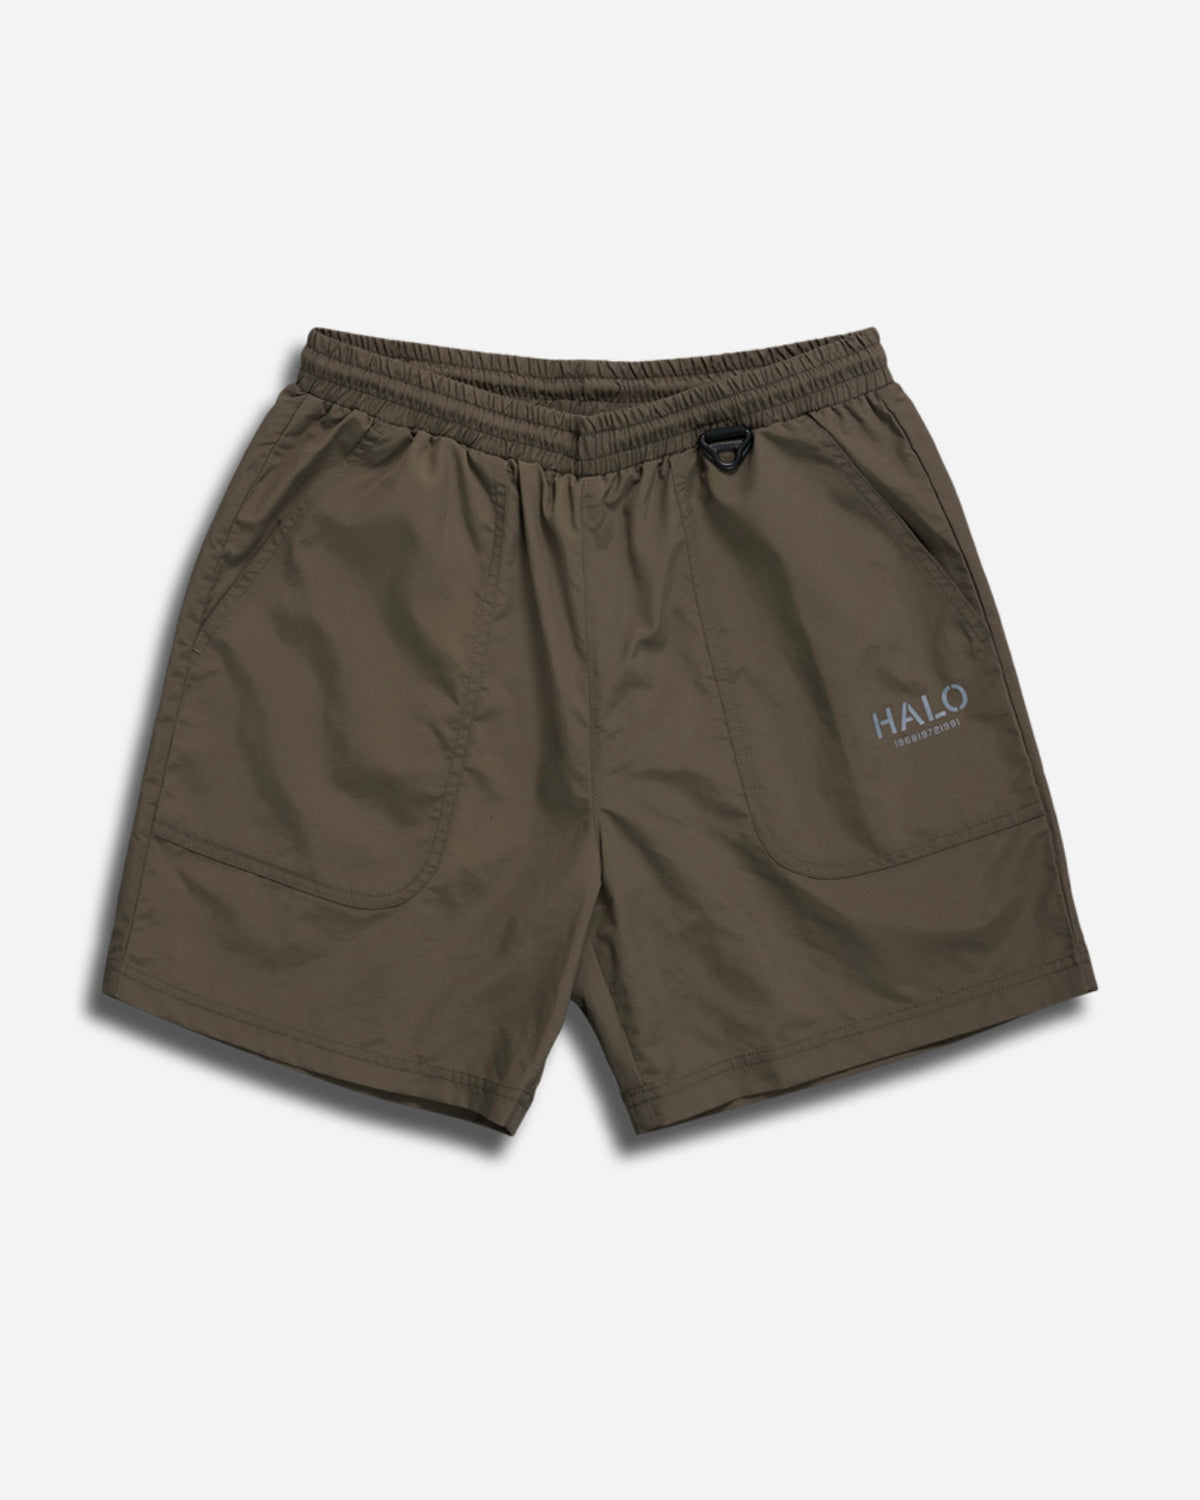 Halo Combat Shorts - Major Brown